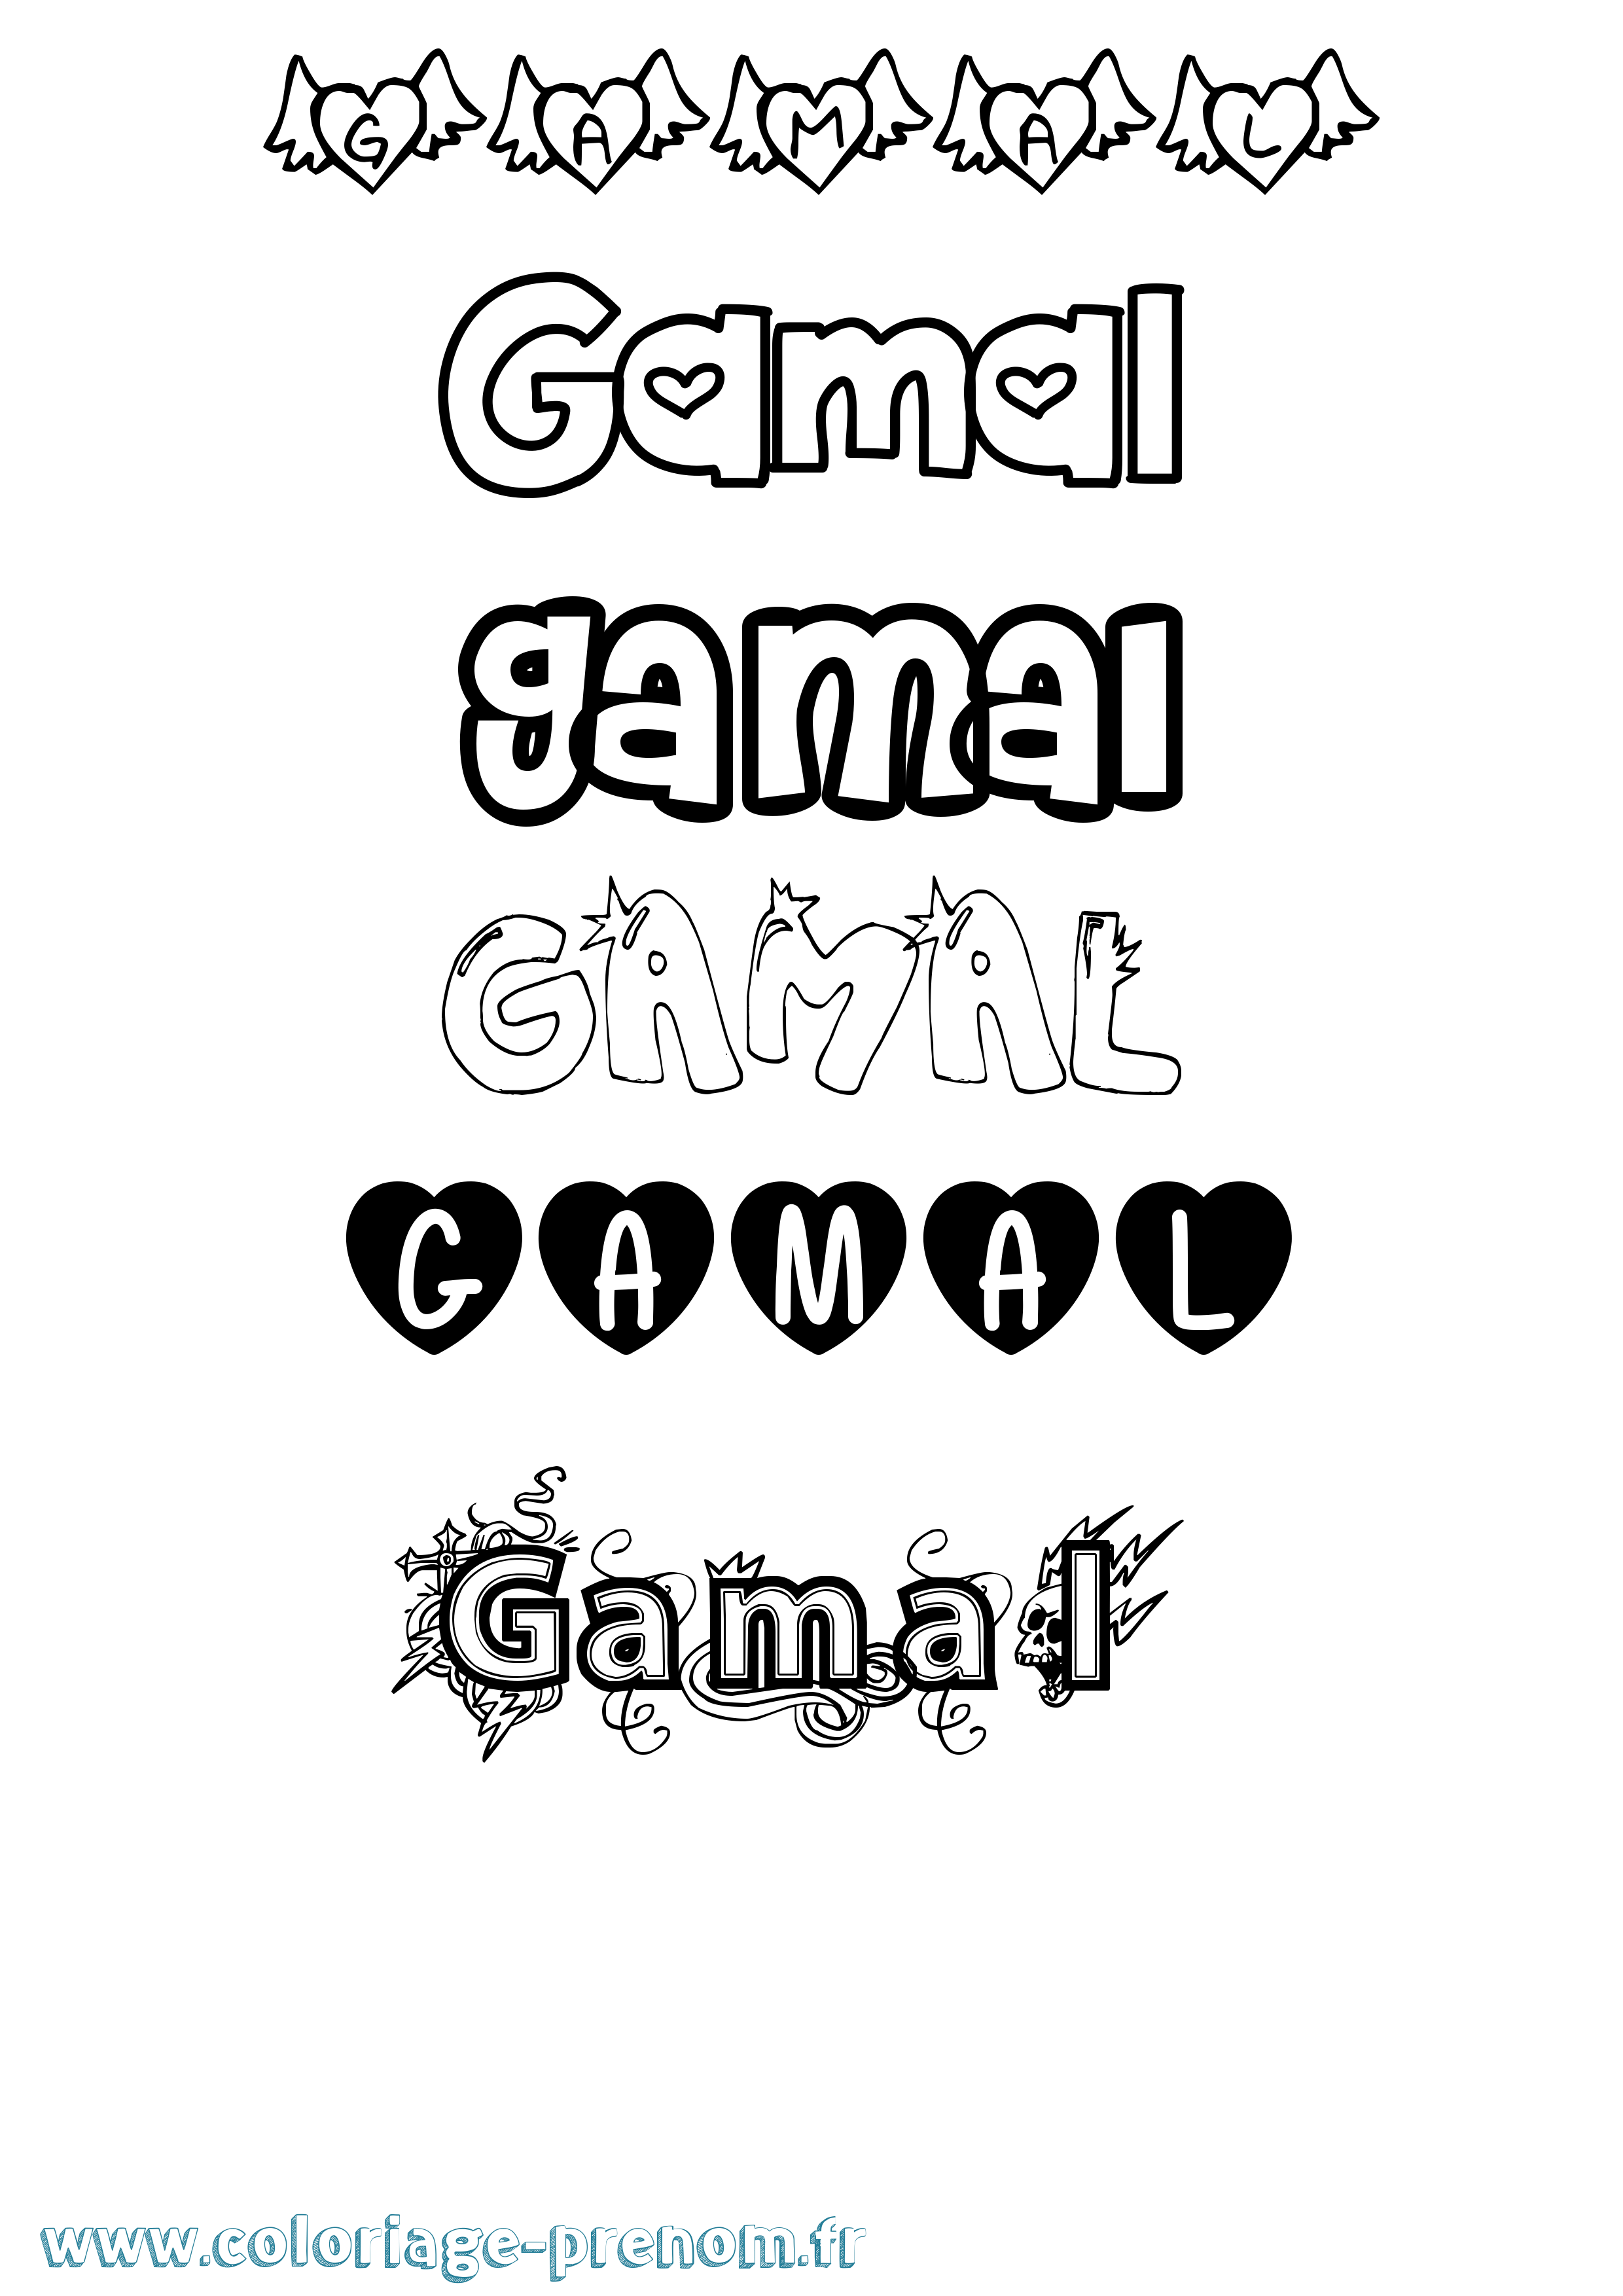 Coloriage prénom Gamal Girly